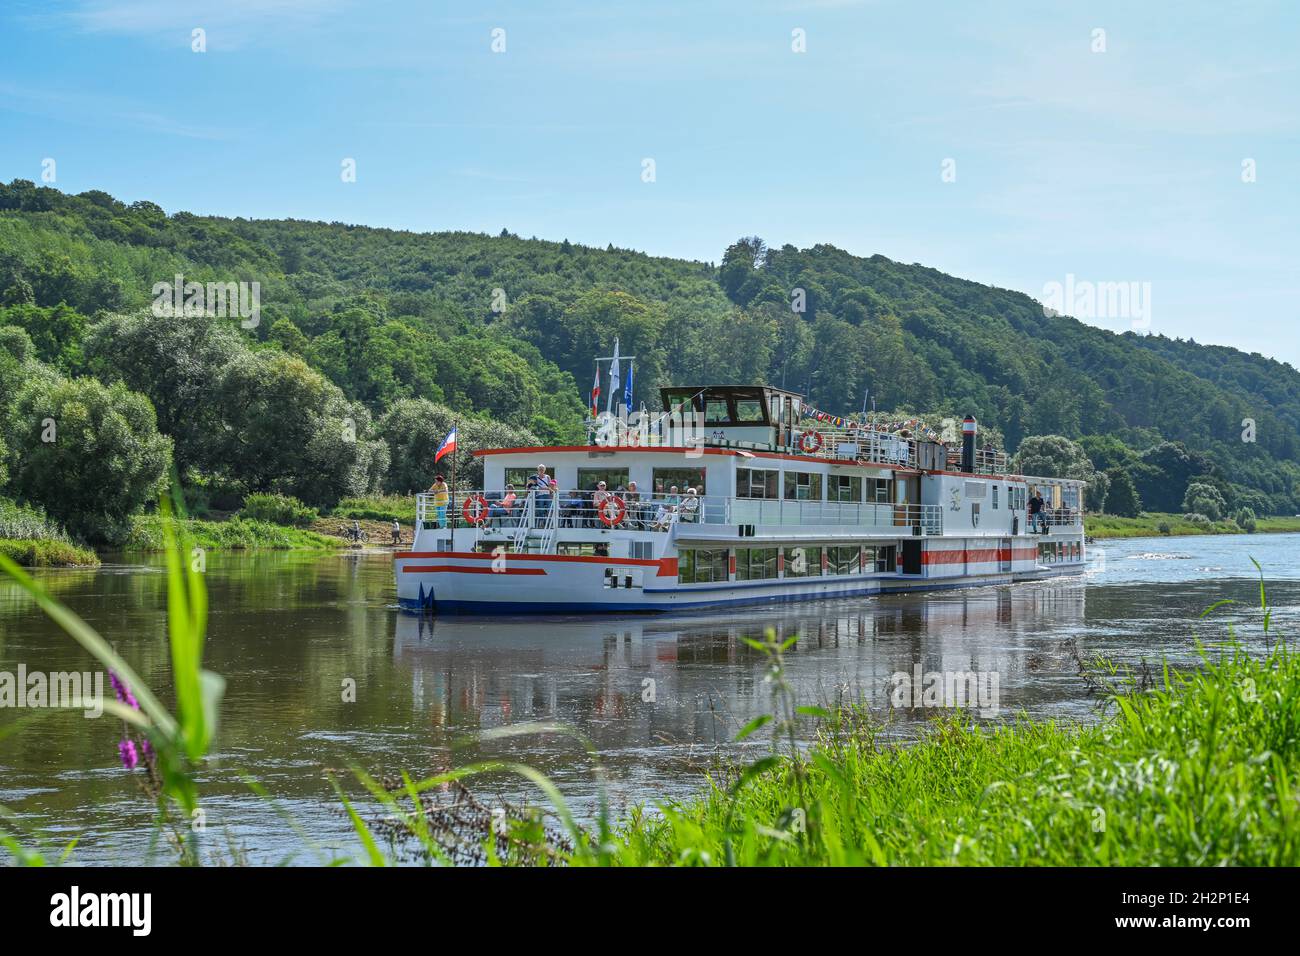 Ausflugsdamper 'Höxter' auf der Weser nahe Beverungen, Nordrhein-Westfalen, Deutschland Stock Photo